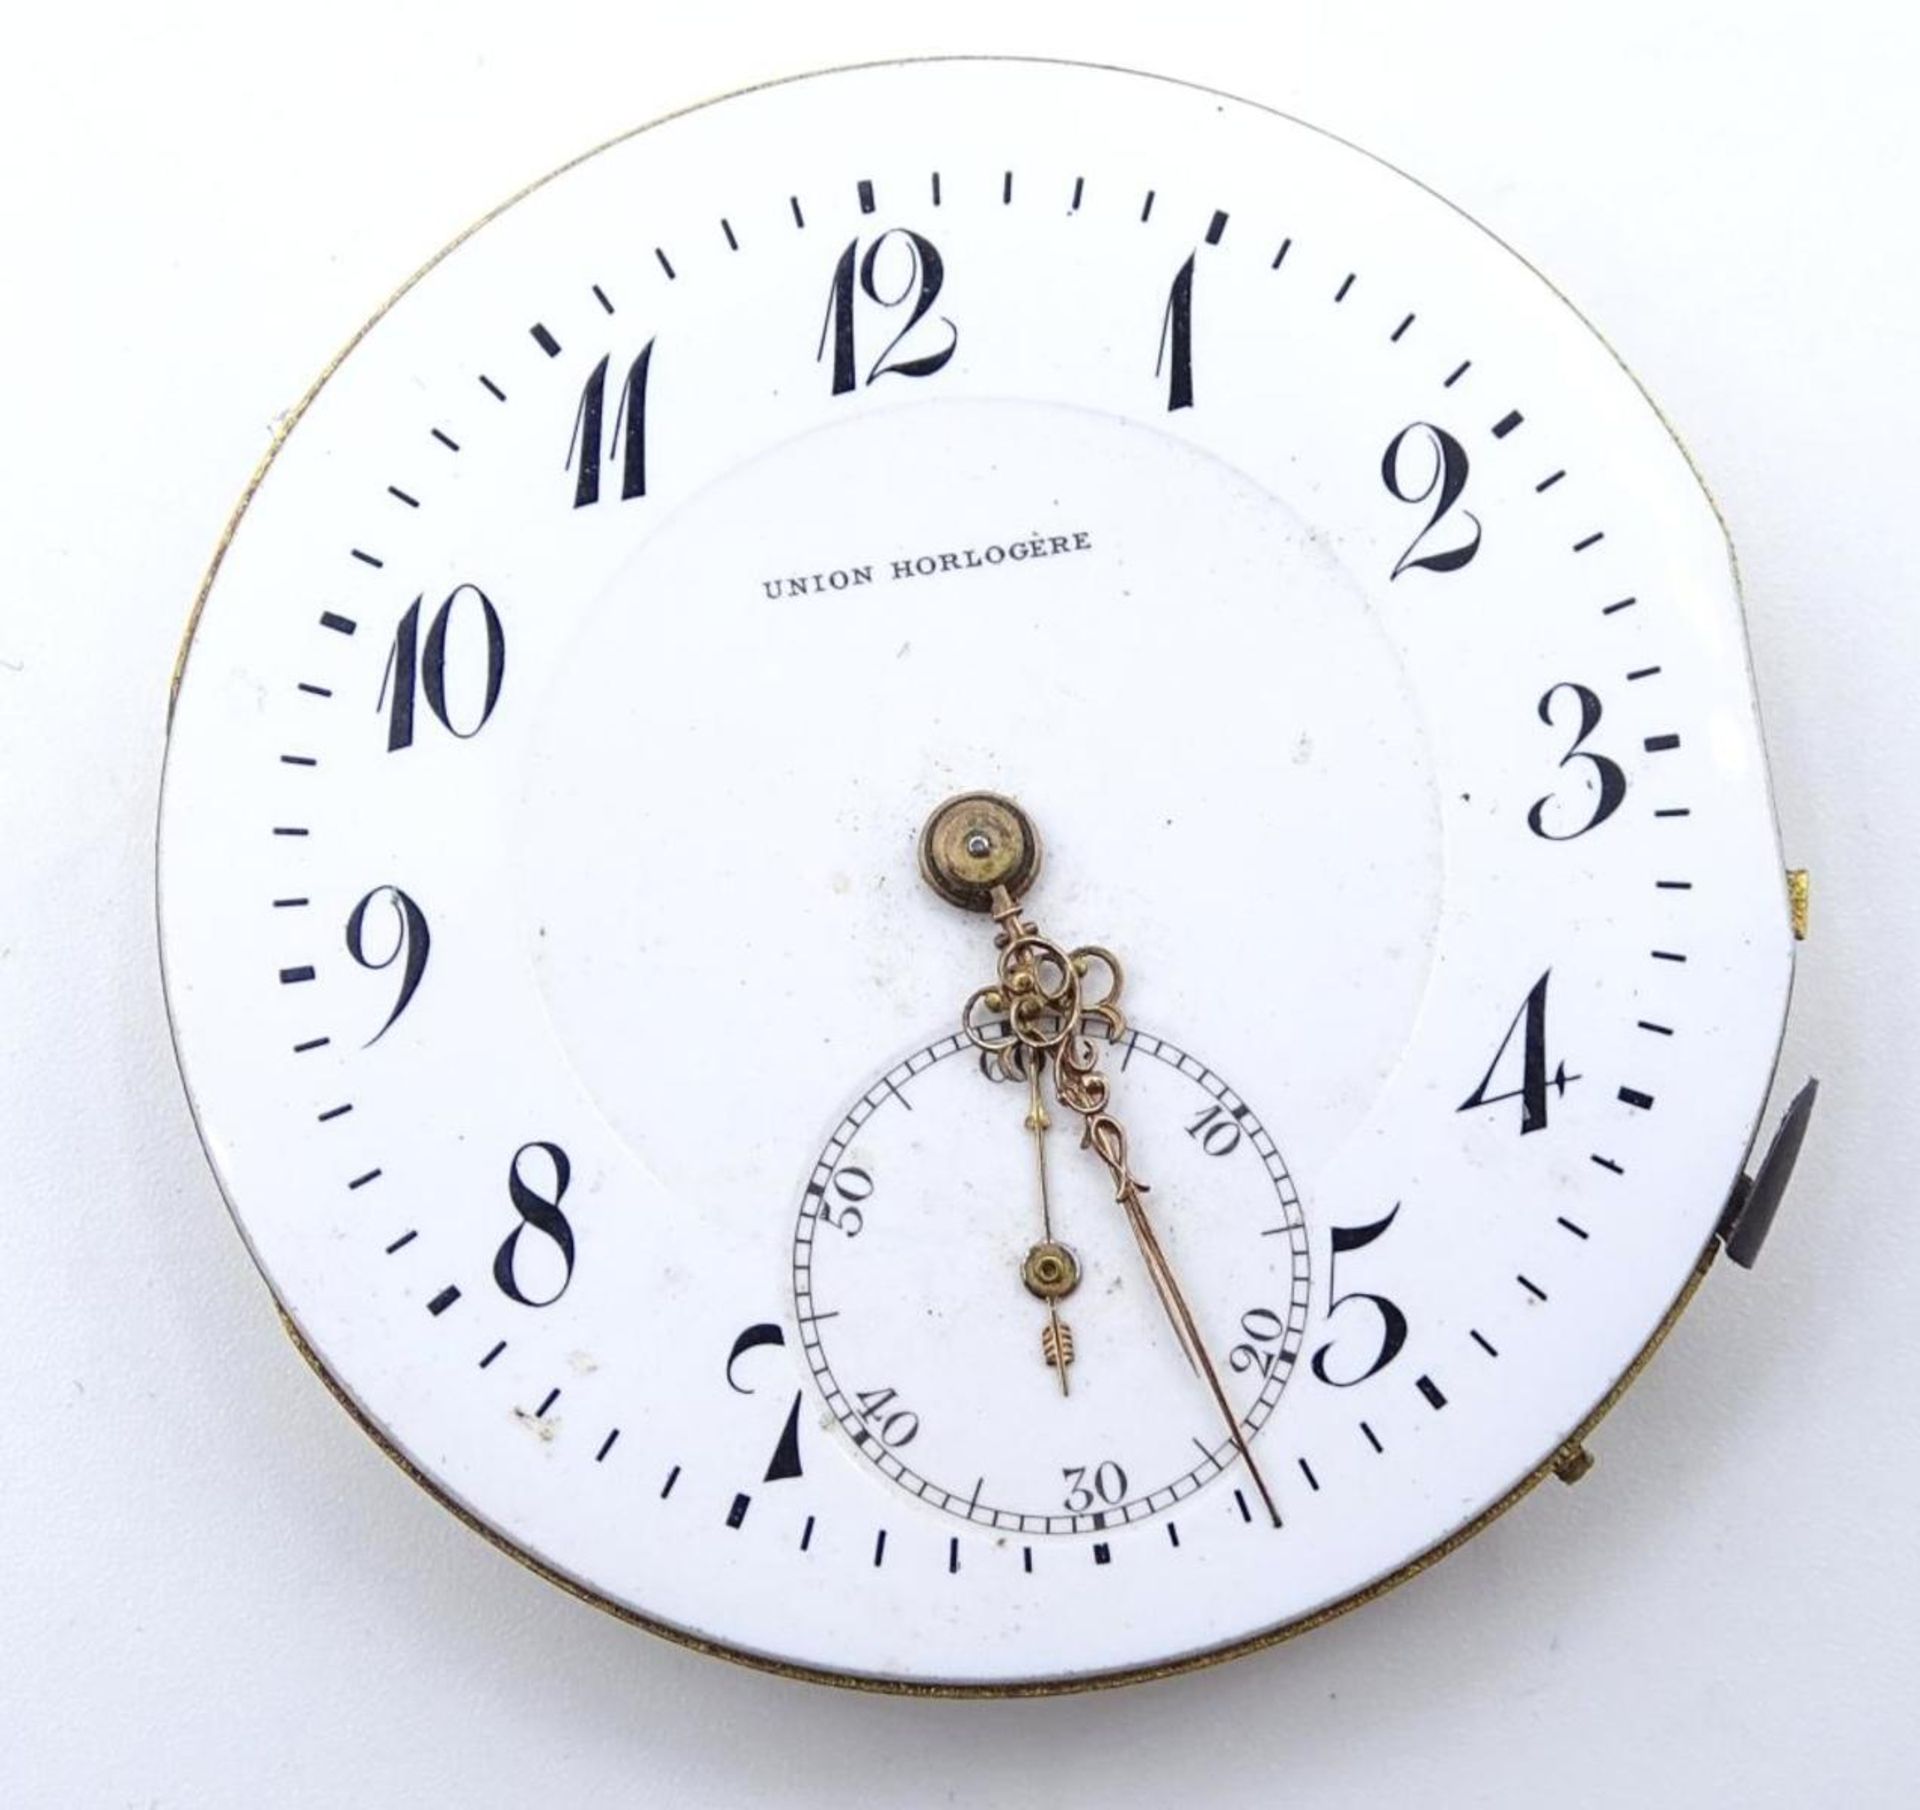 Uhrenwerk "Union Hologére"d-4,2cm